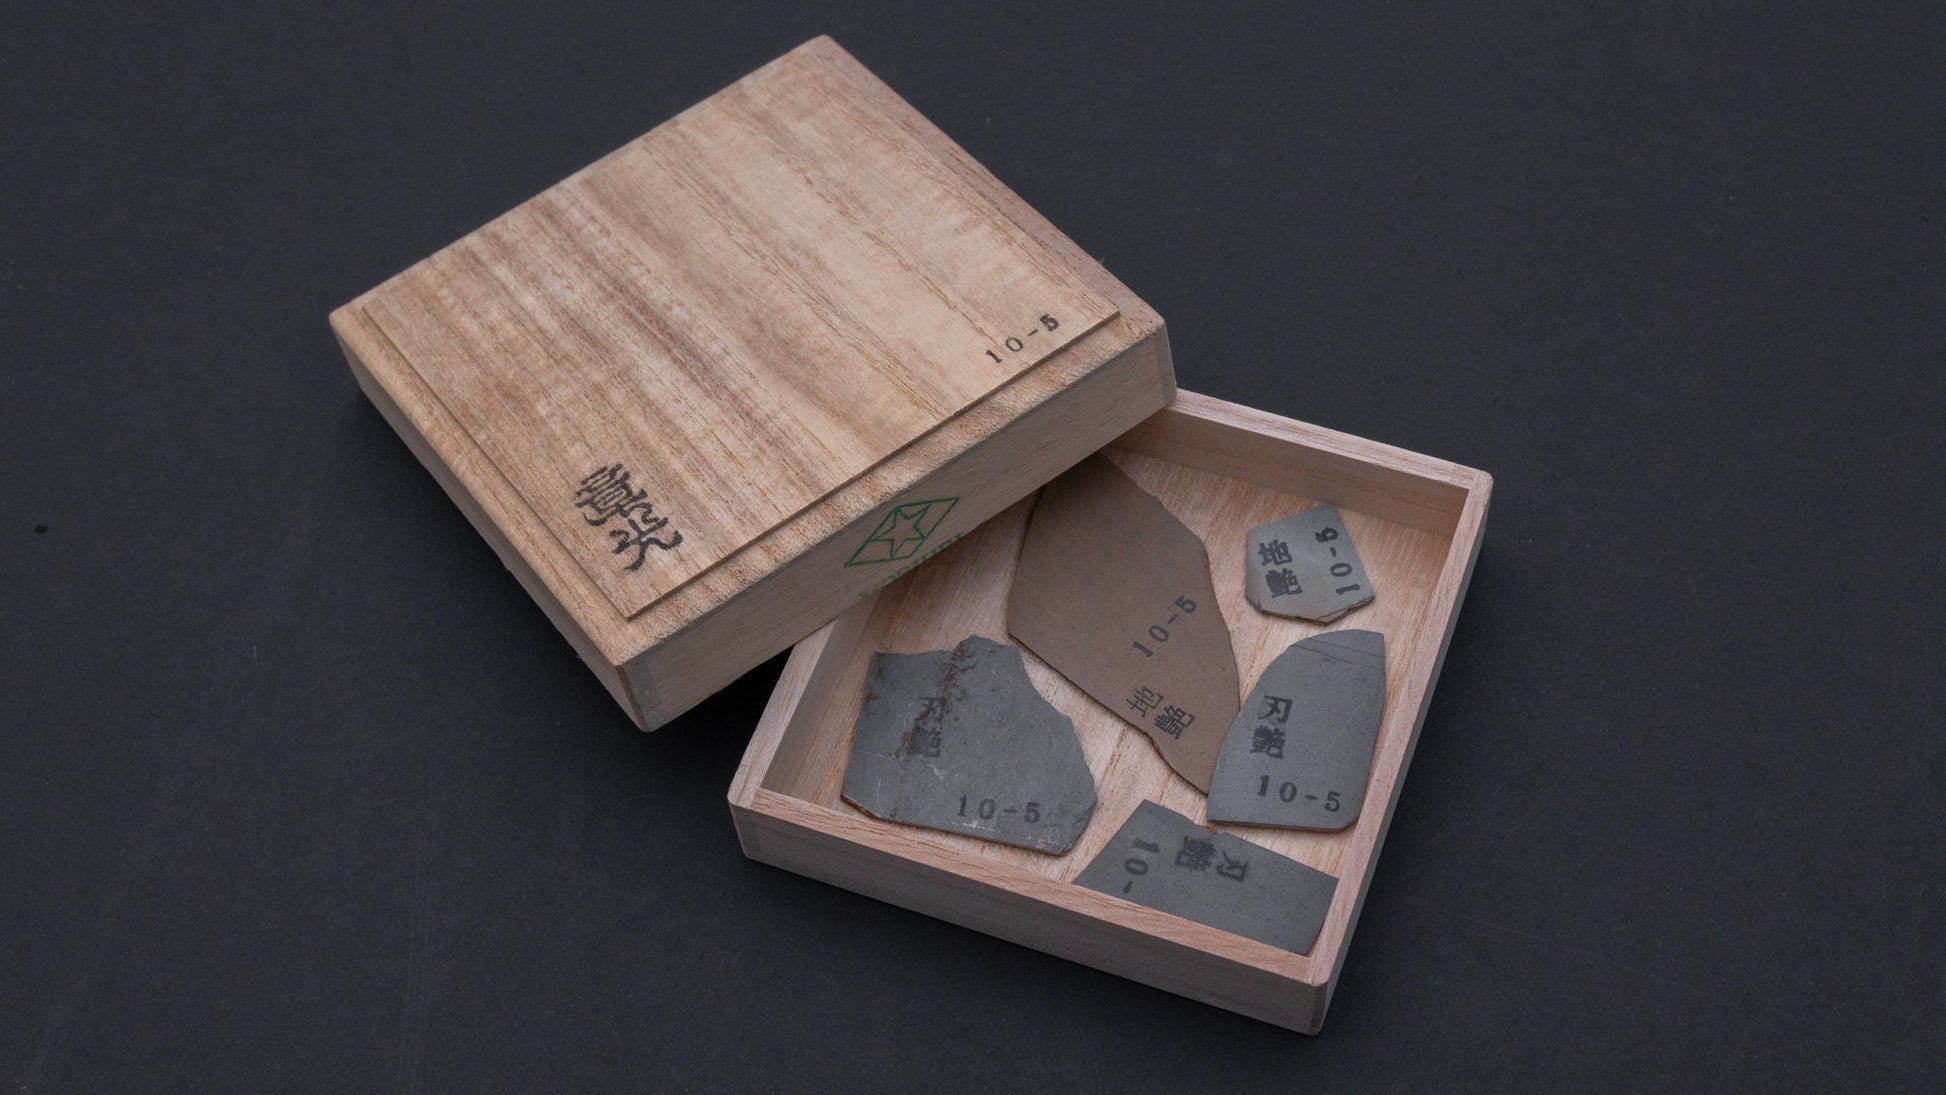 Morihei Akimitsu Jizuya Hazuya Finger Stone (10-5) | HITOHIRA